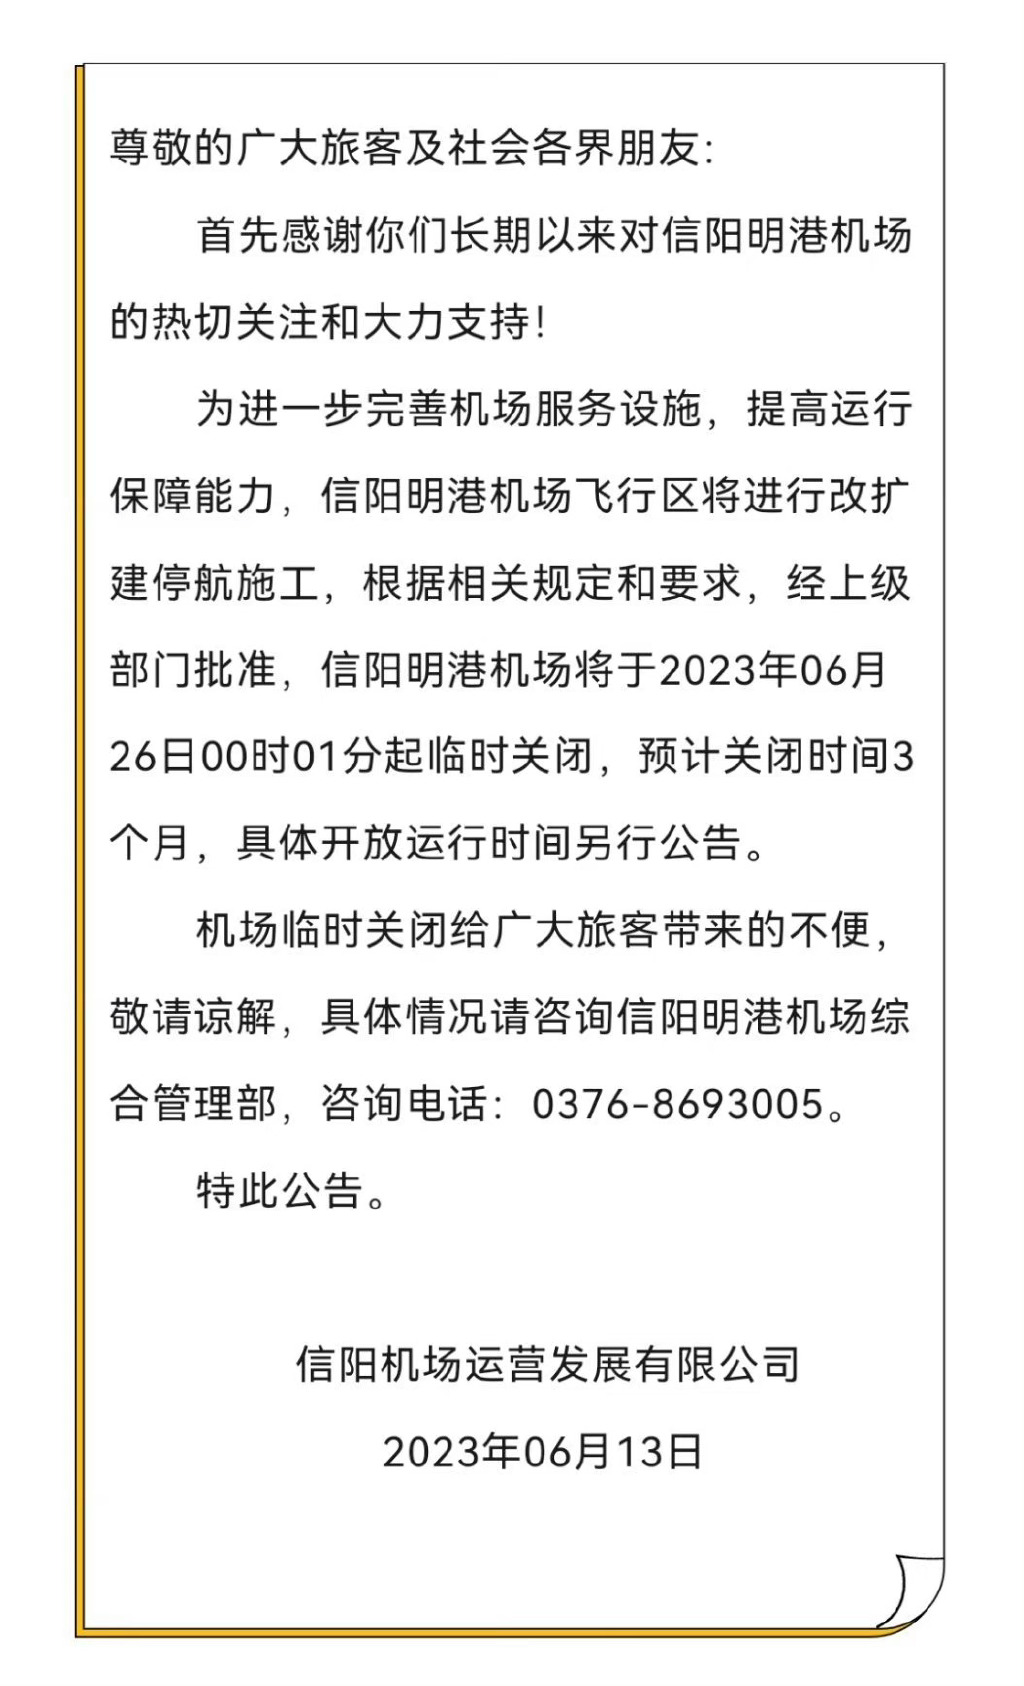 信阳明港机场临时关闭3个月